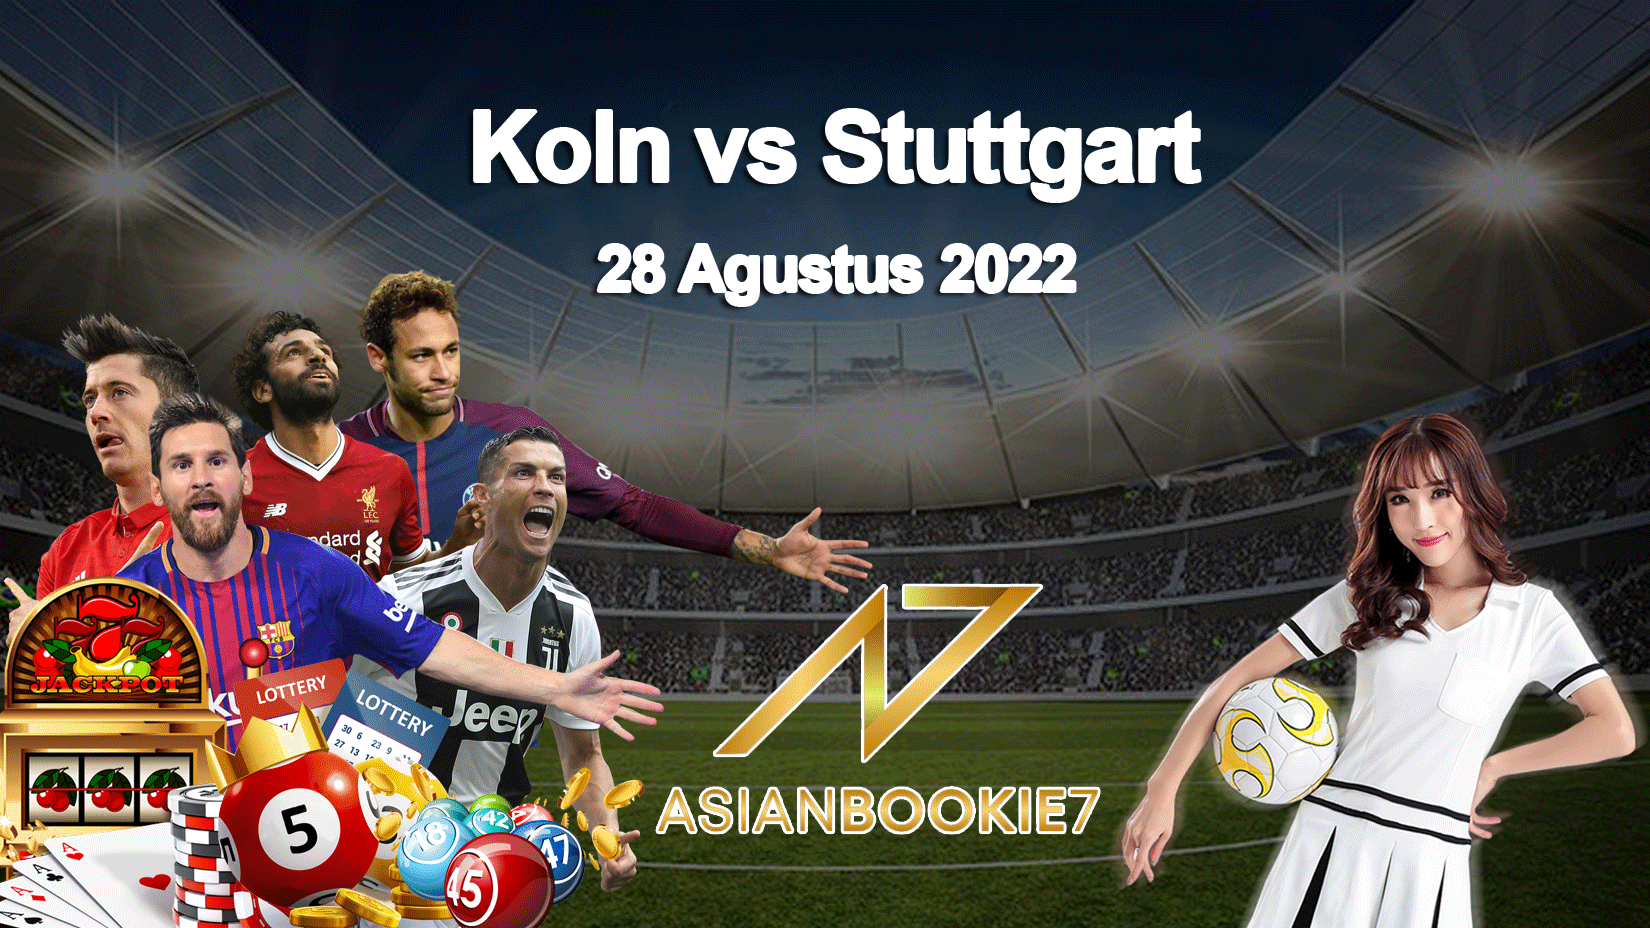 Prediksi Koln vs Stuttgart 28 Agustus 2022